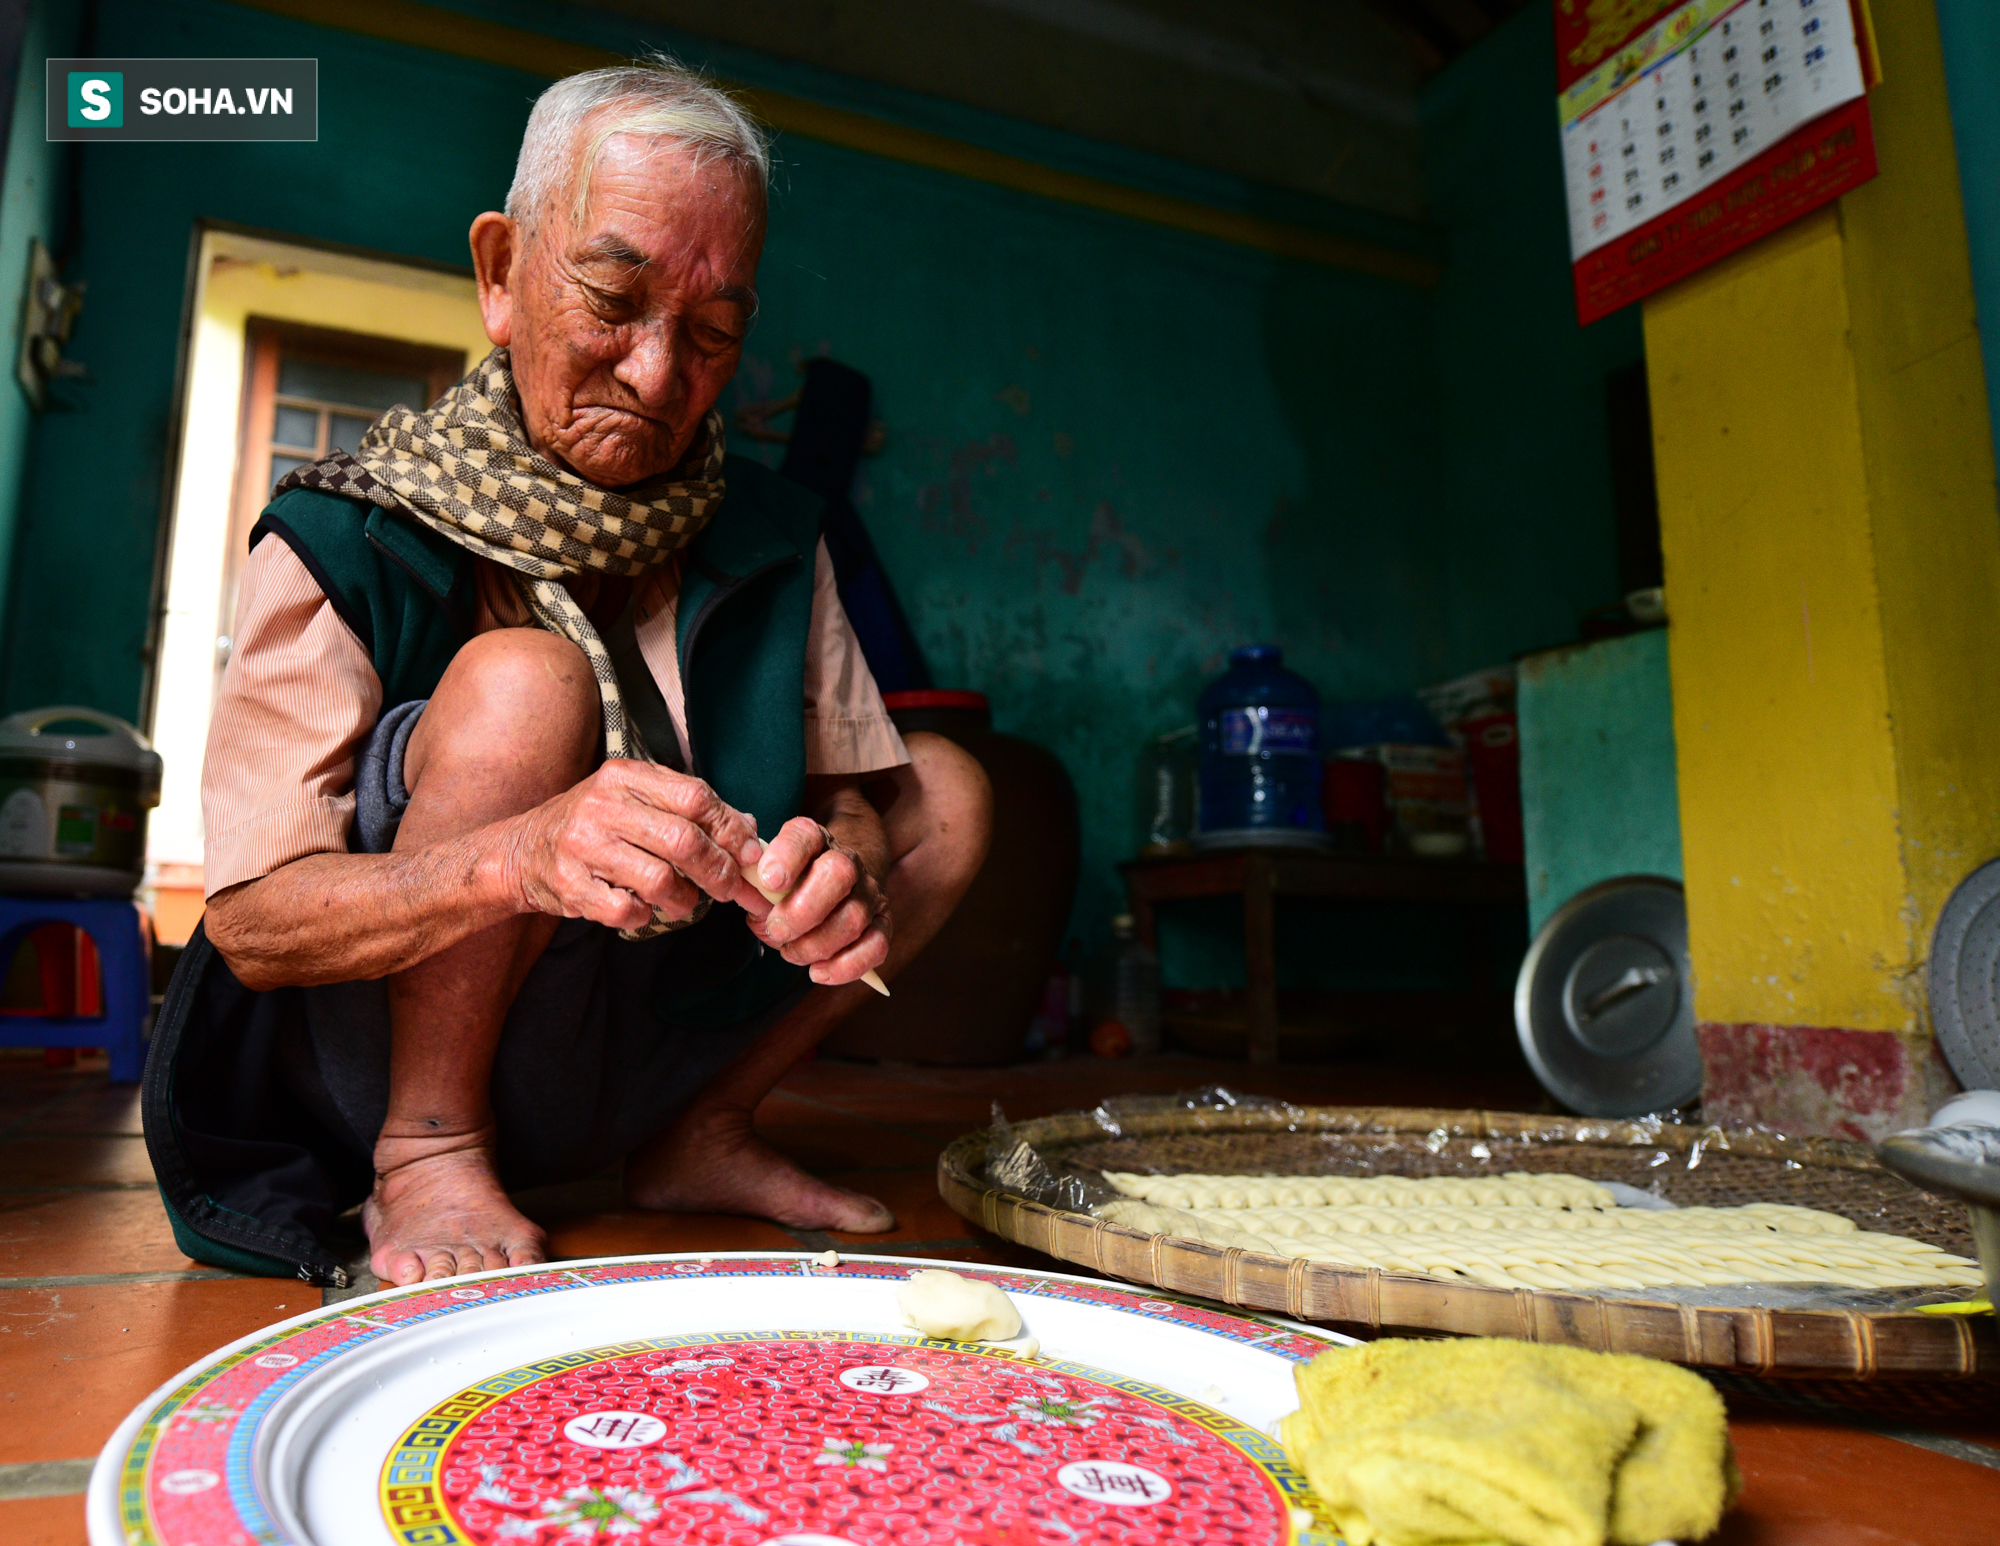 Ông cụ 70 năm làm bánh từ gạo, cả làng đến học nhưng đều lắc đầu chào thua - Ảnh 3.